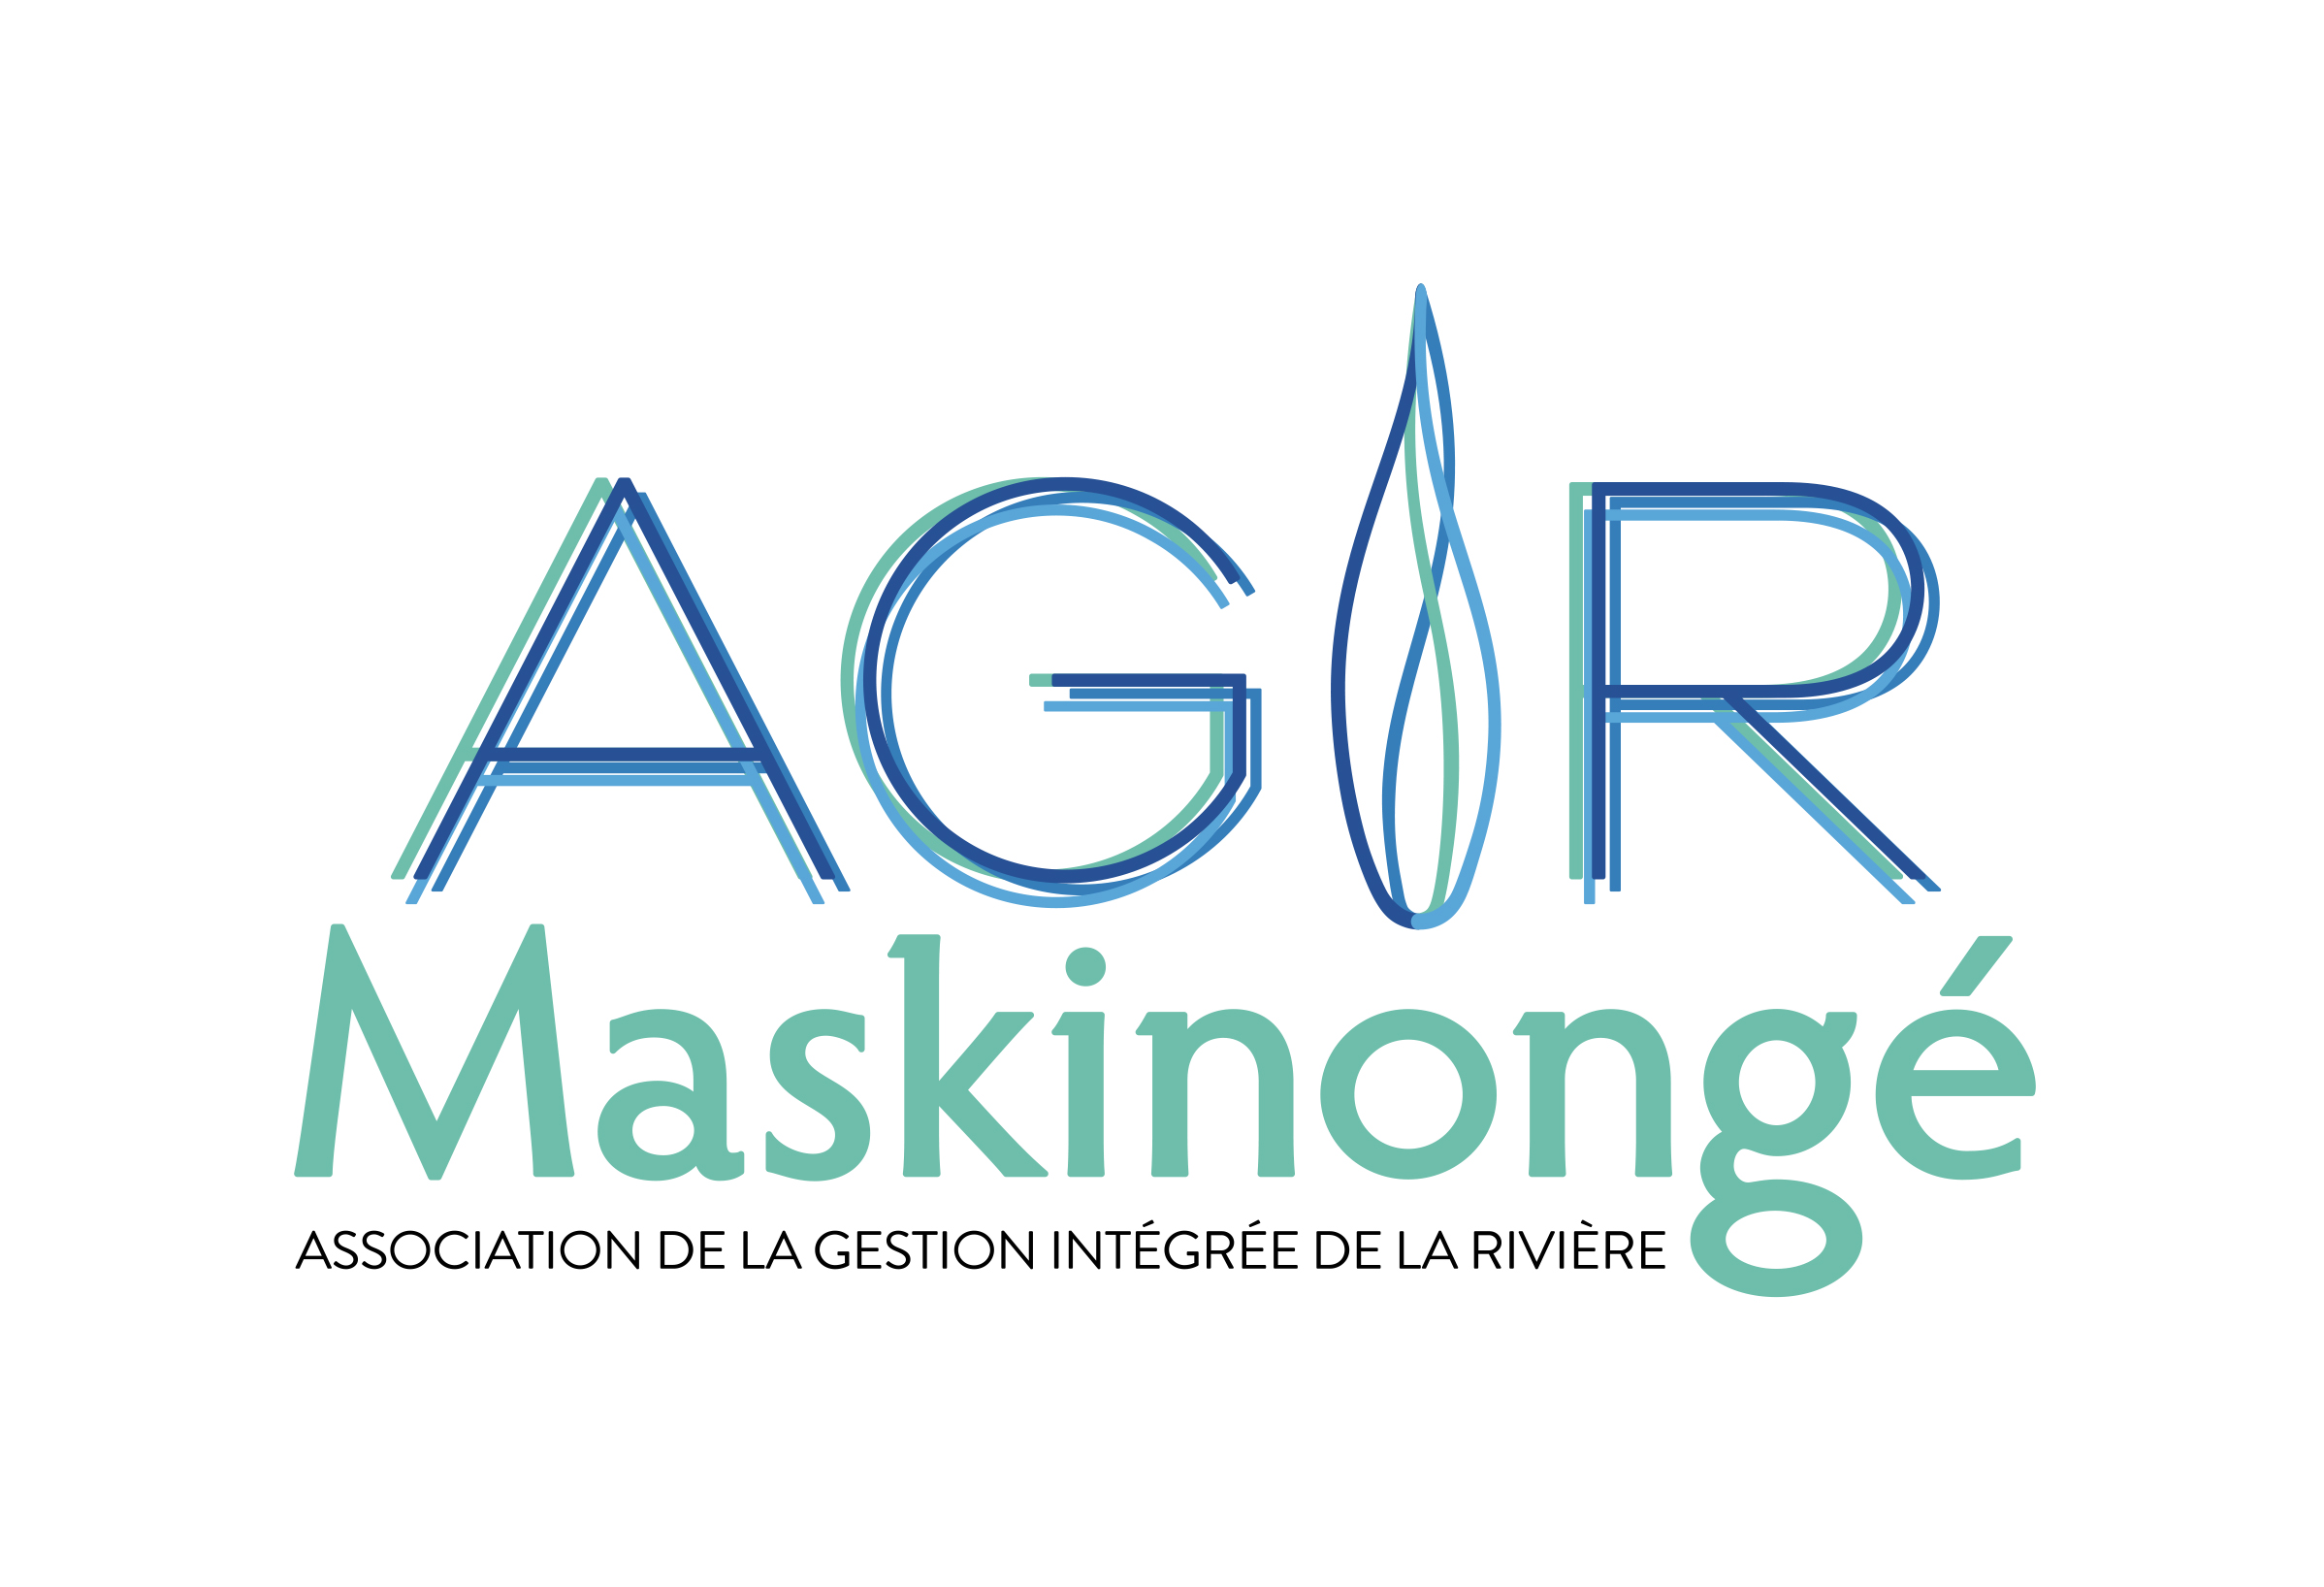 Association de la gestion intégrée de la rivière Maskinongé